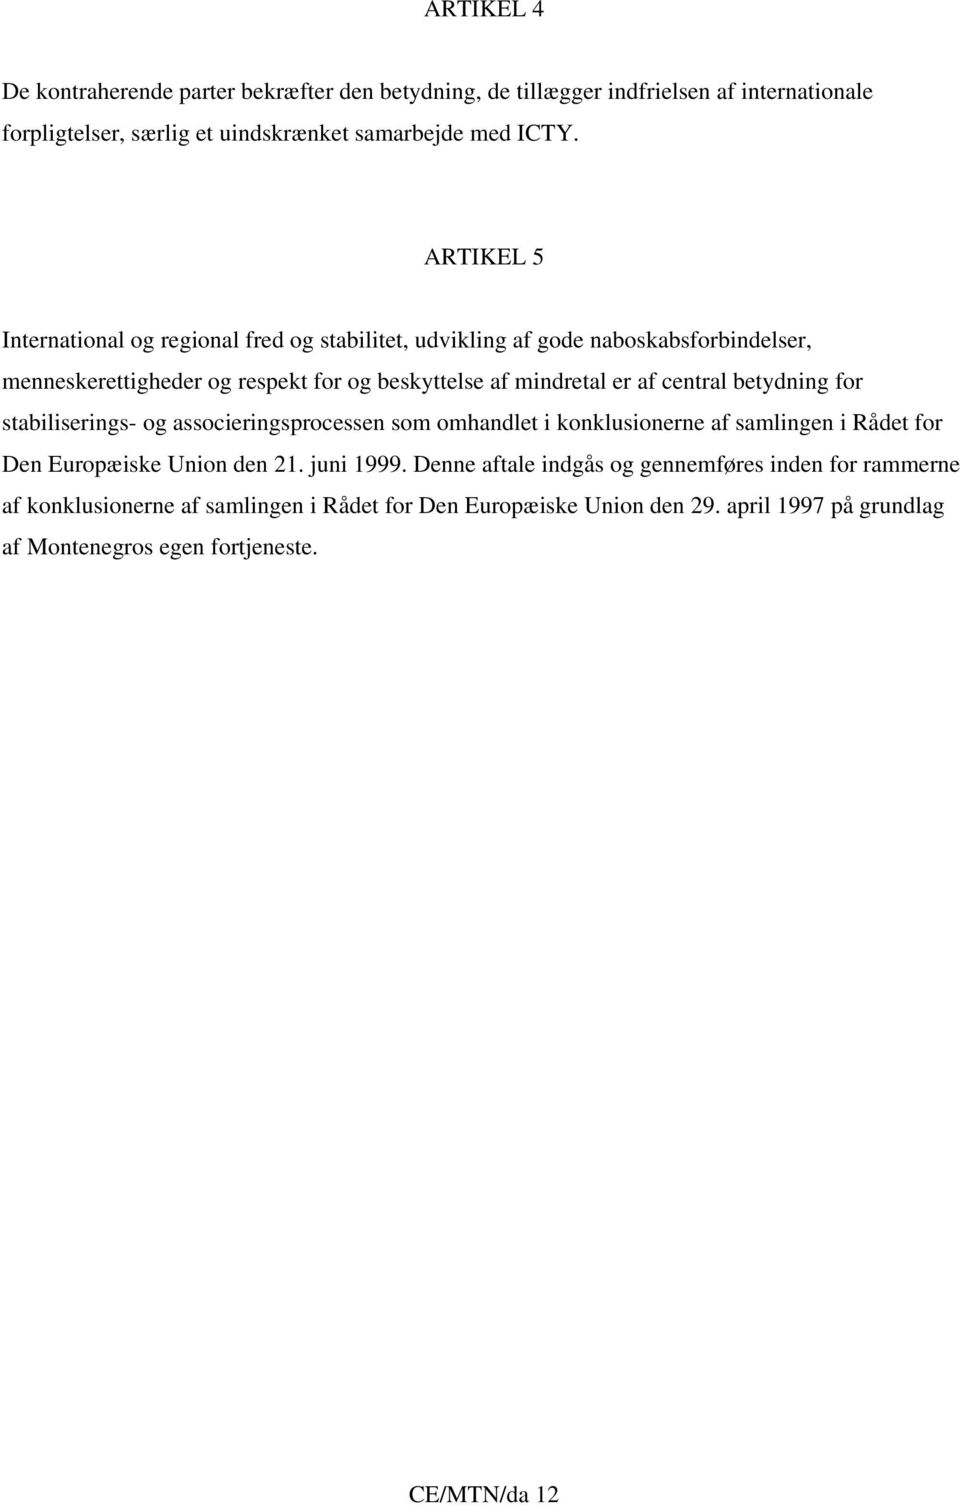 central betydning for stabiliserings- og associeringsprocessen som omhandlet i konklusionerne af samlingen i Rådet for Den Europæiske Union den 21. juni 1999.